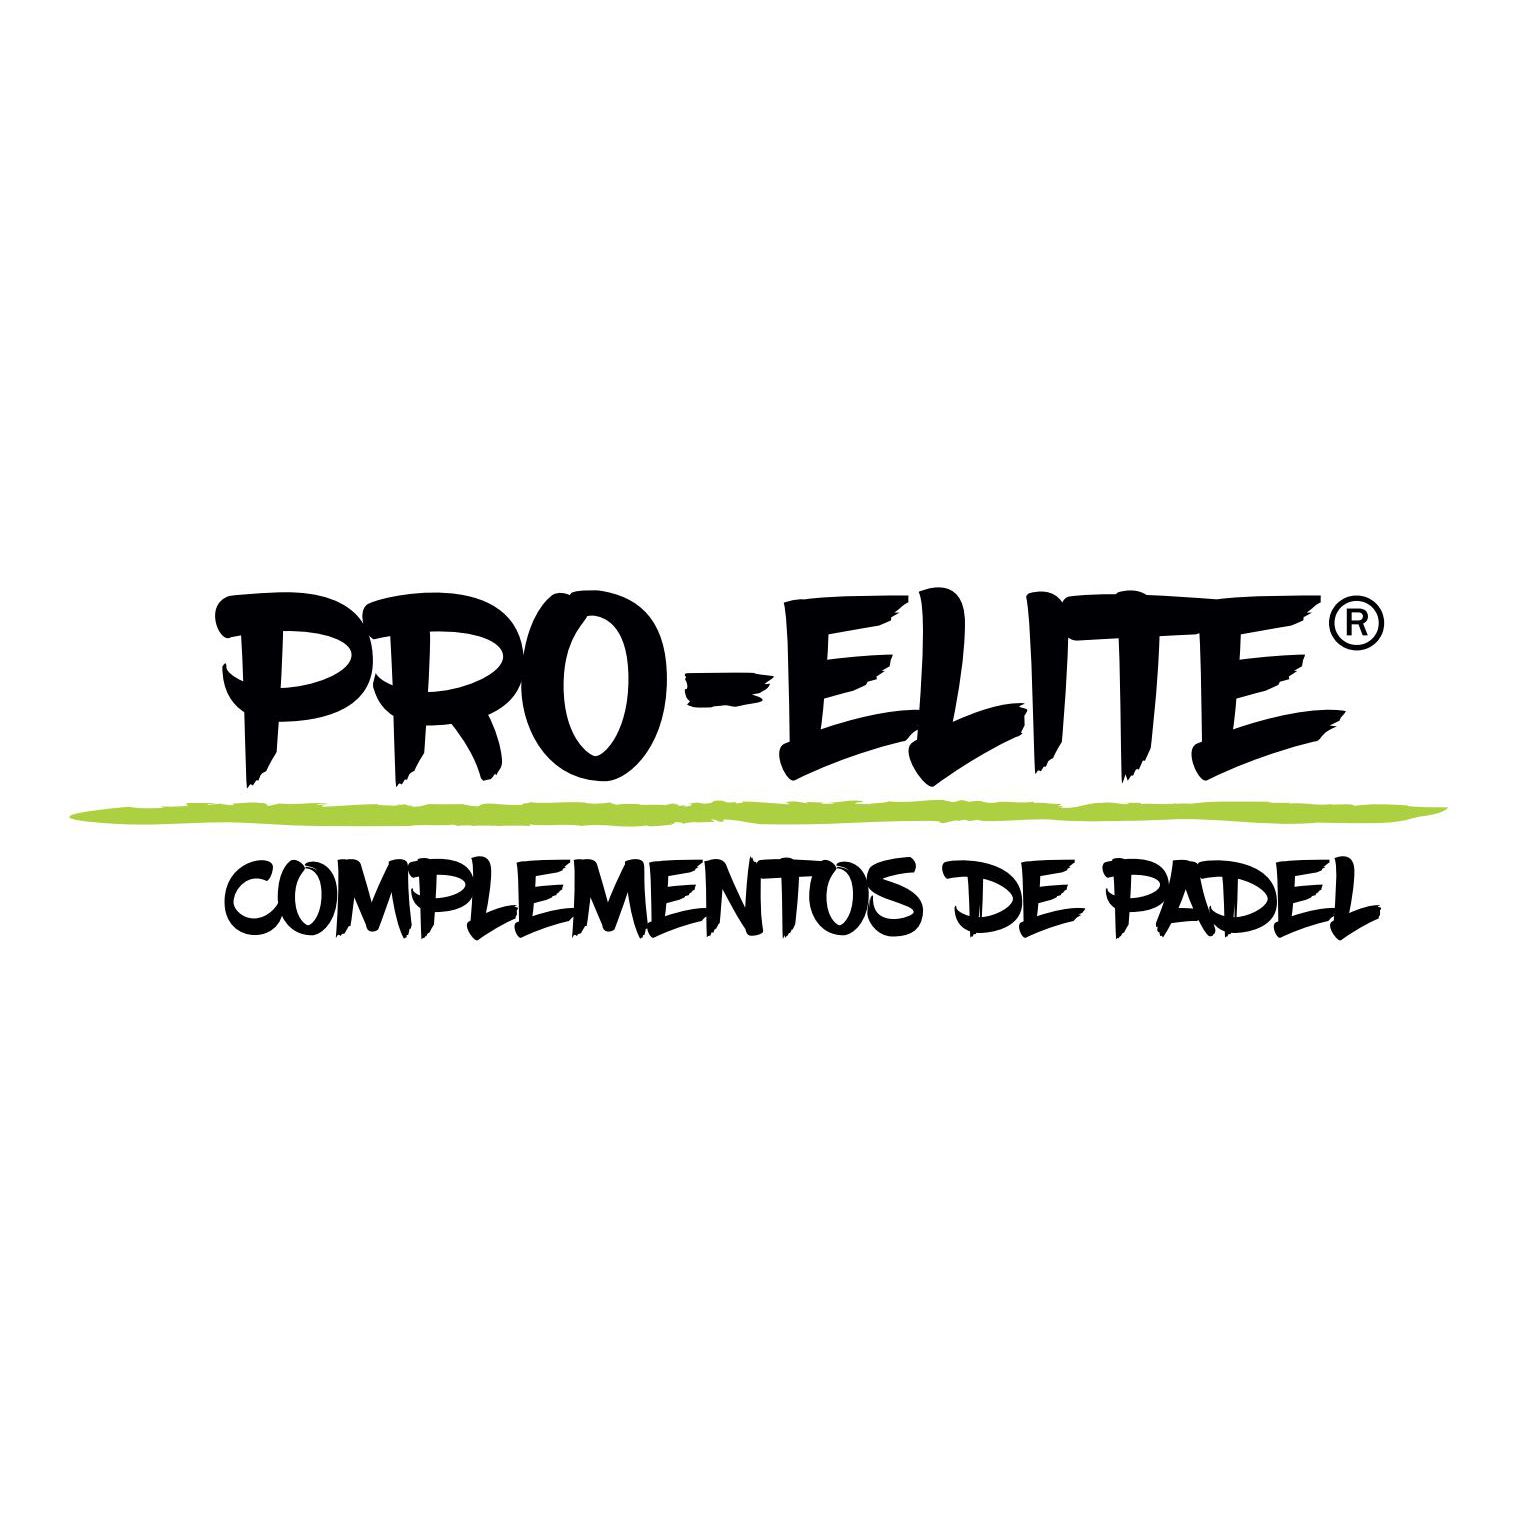 Pro-elite Logo